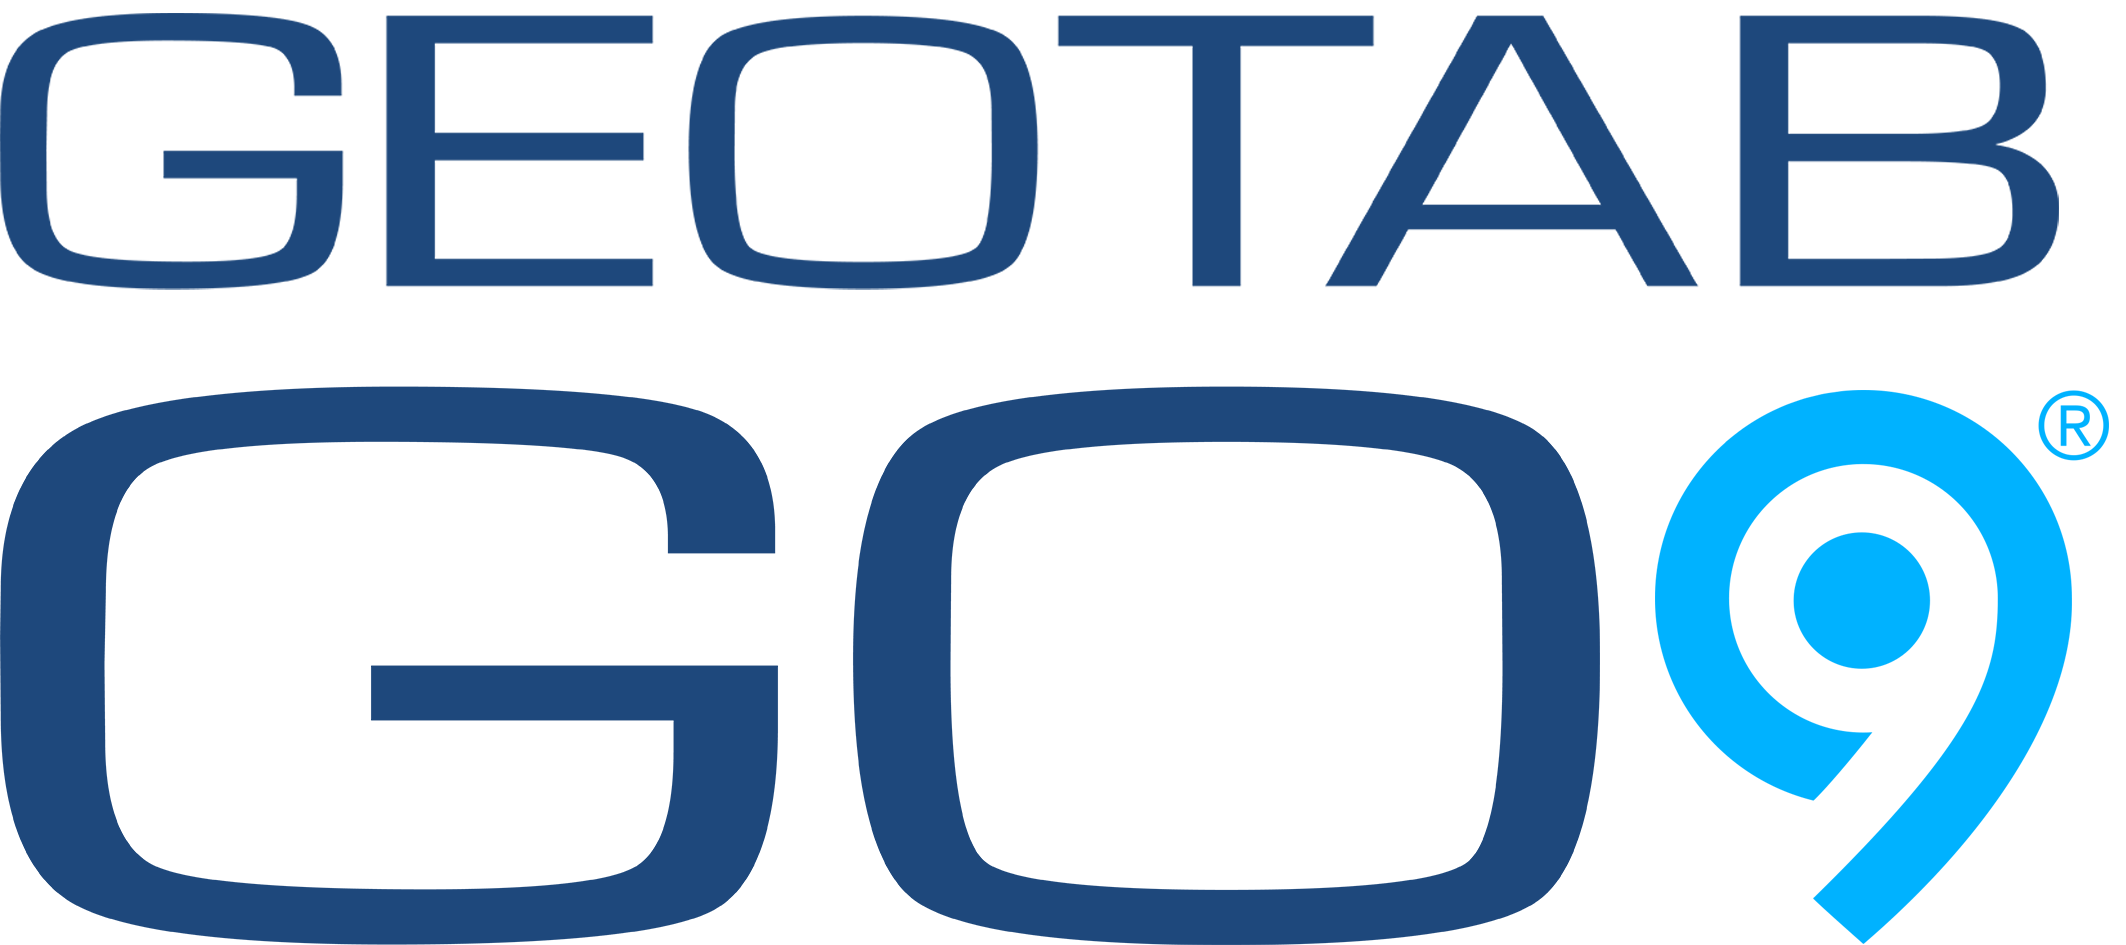 Geotab GO9